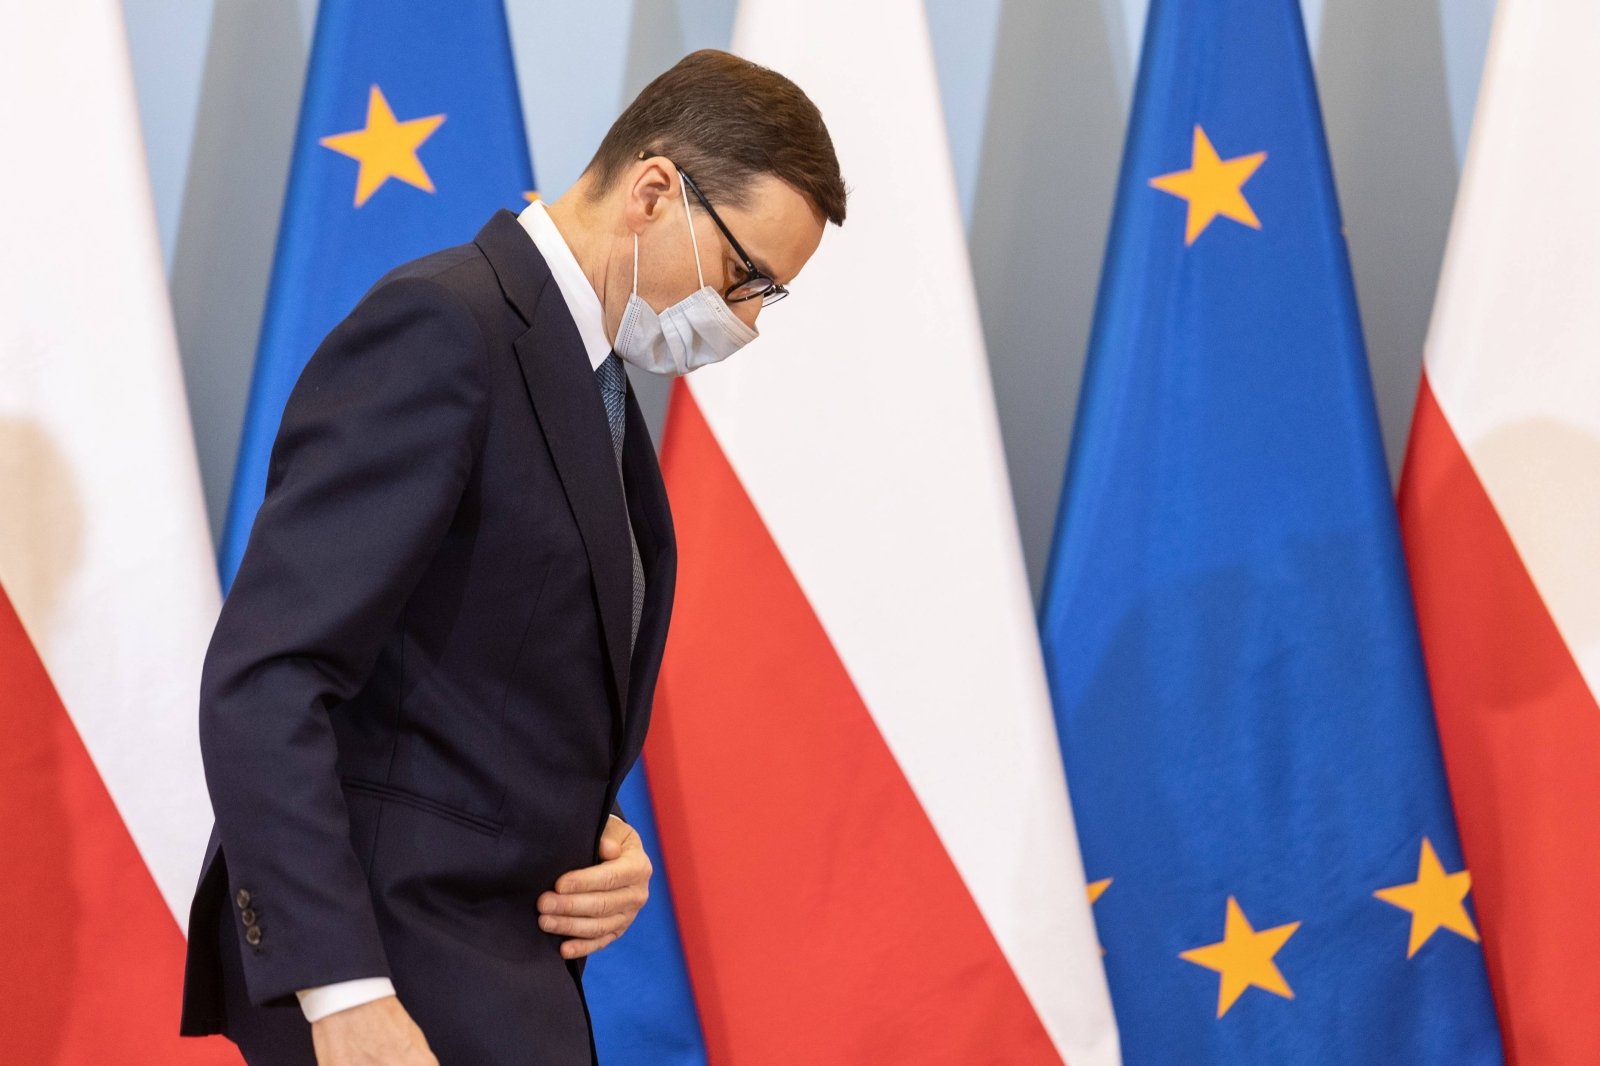 Polski premier Morawieckis: Rosja może zaatakować Polskę, Finlandię, kraje bałtyckie